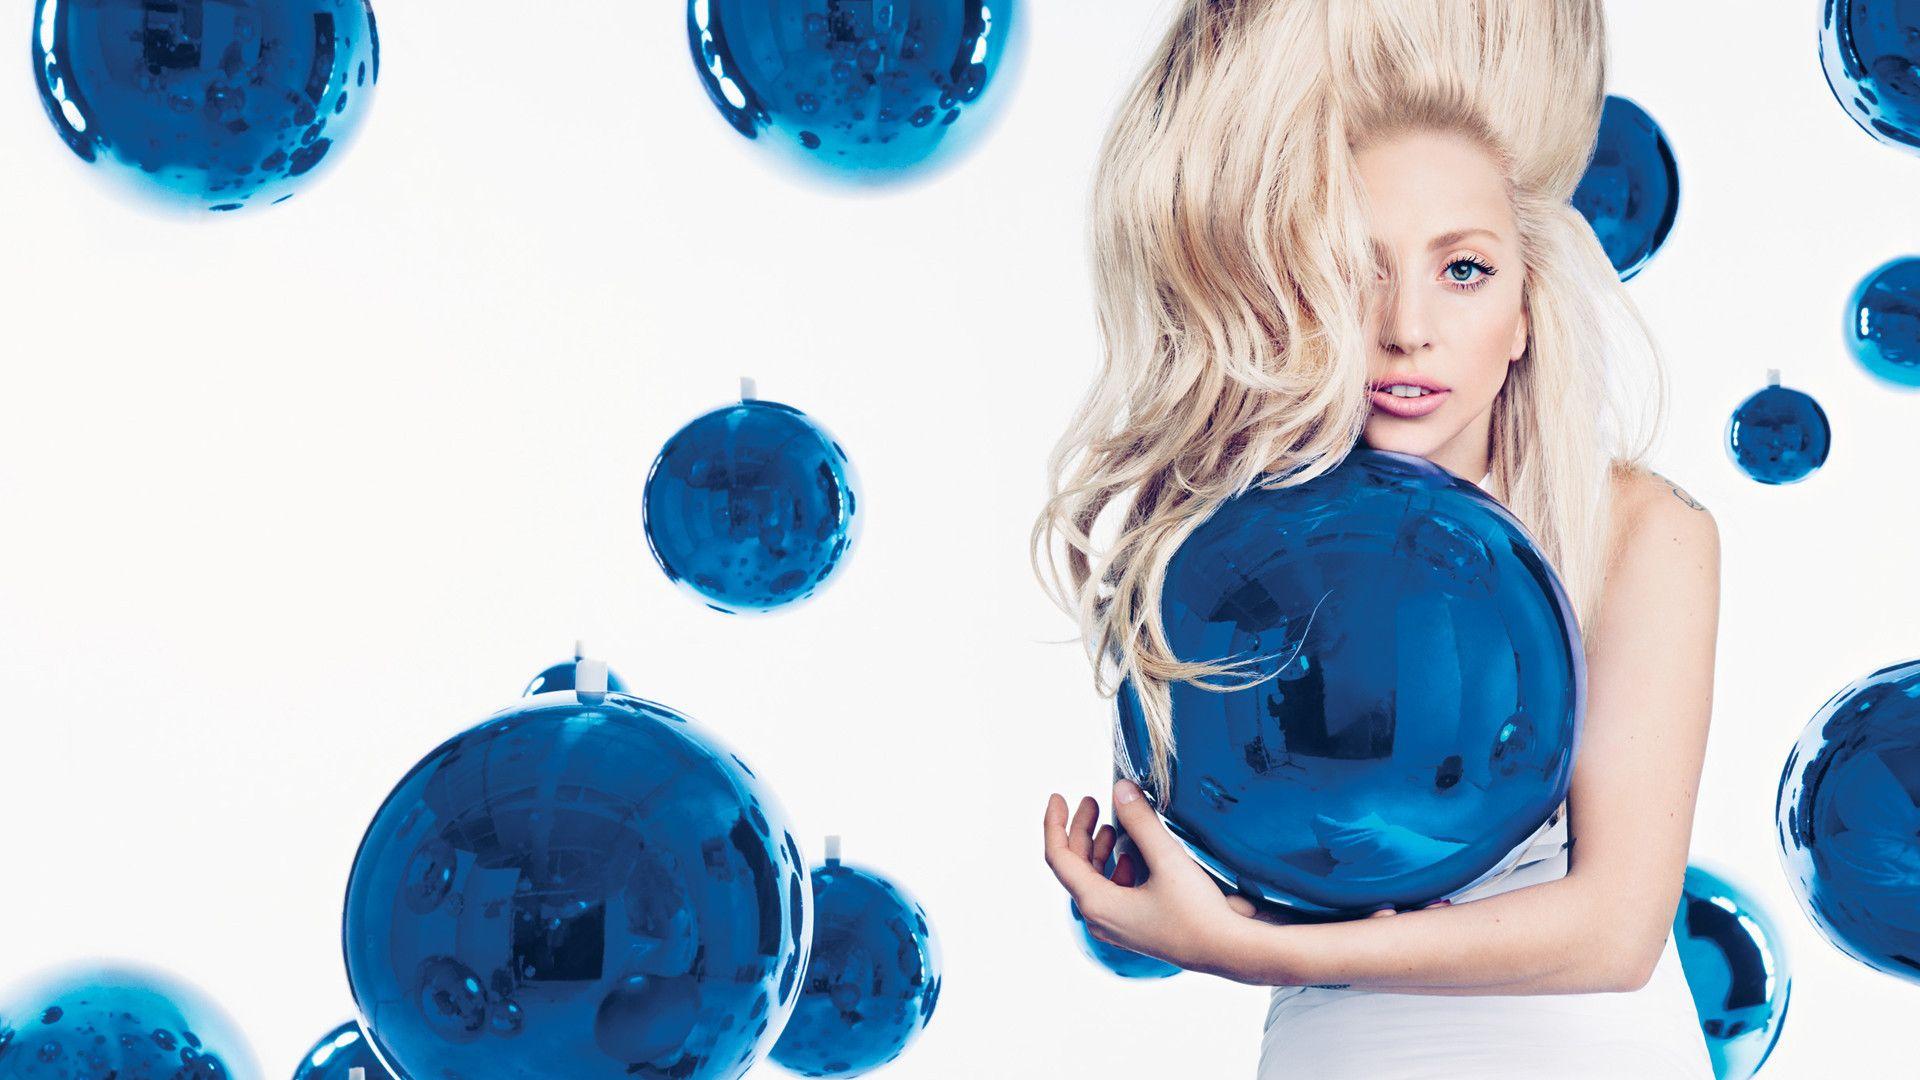 1920x1080 Hình nền: Lady Gaga, màu xanh da trời, quả bóng bay, Đồ chơi, trái bóng, Vẻ quyến rũ, chơi